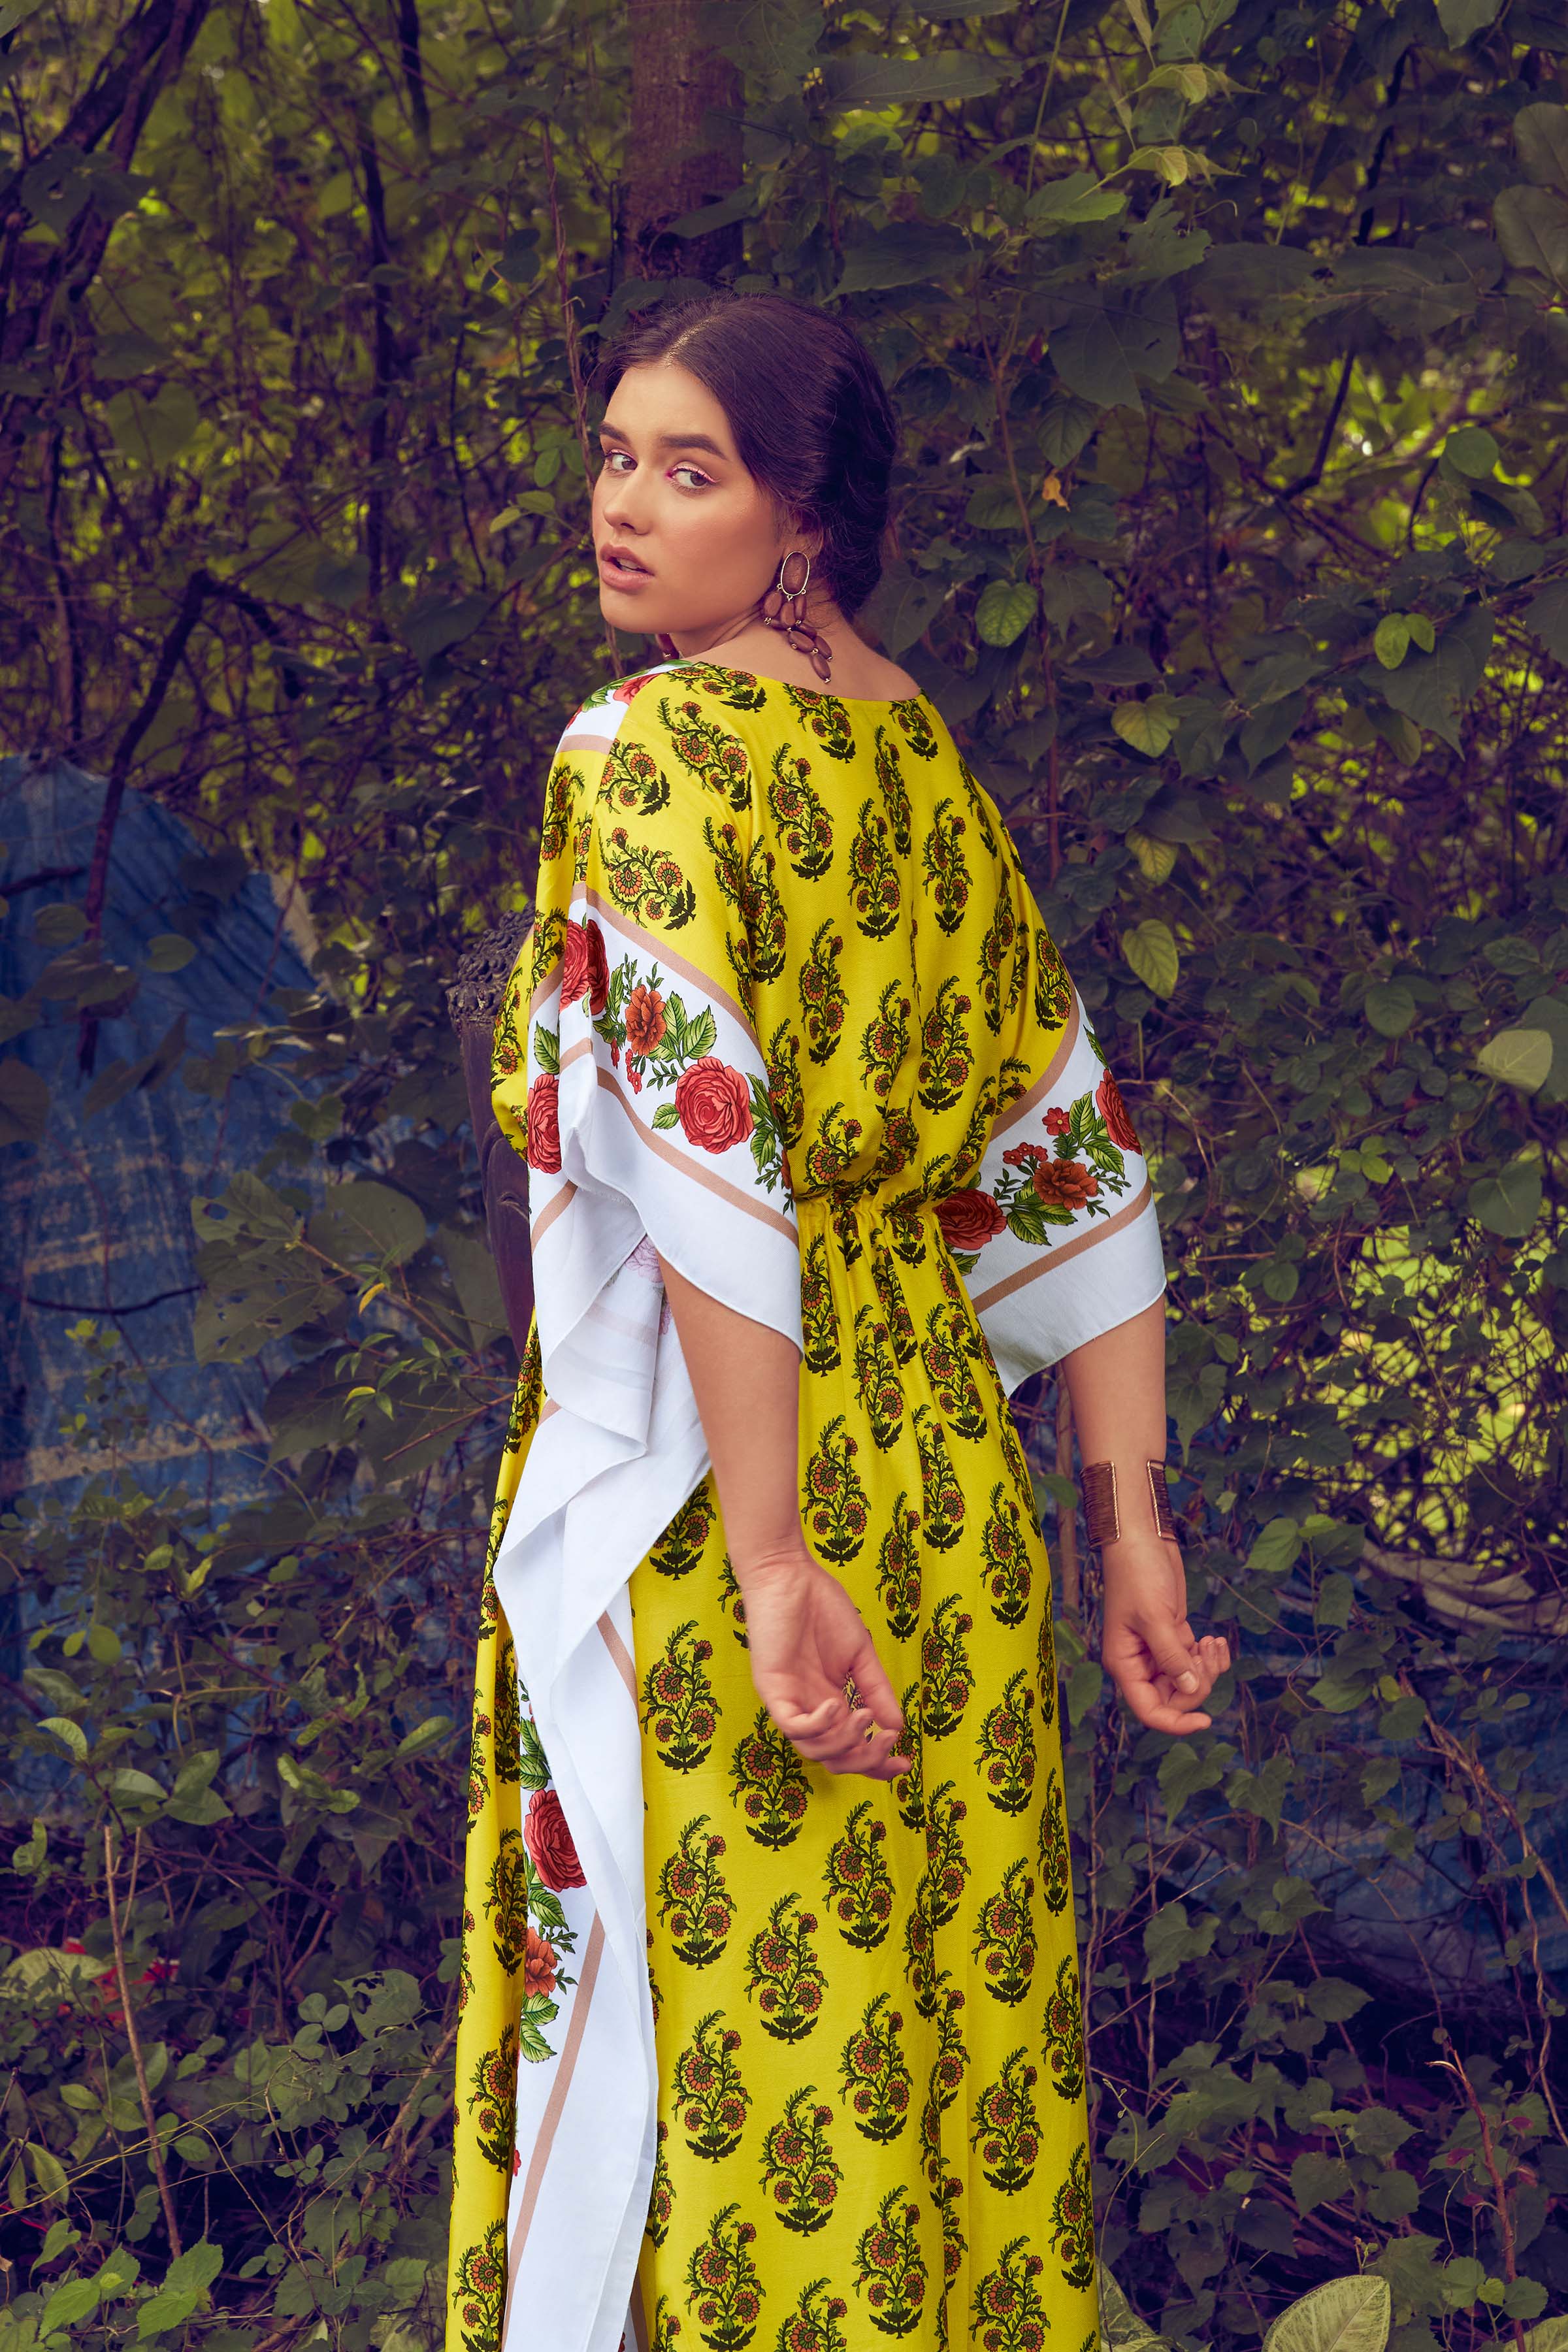 Colorful Printed Kaftan dress